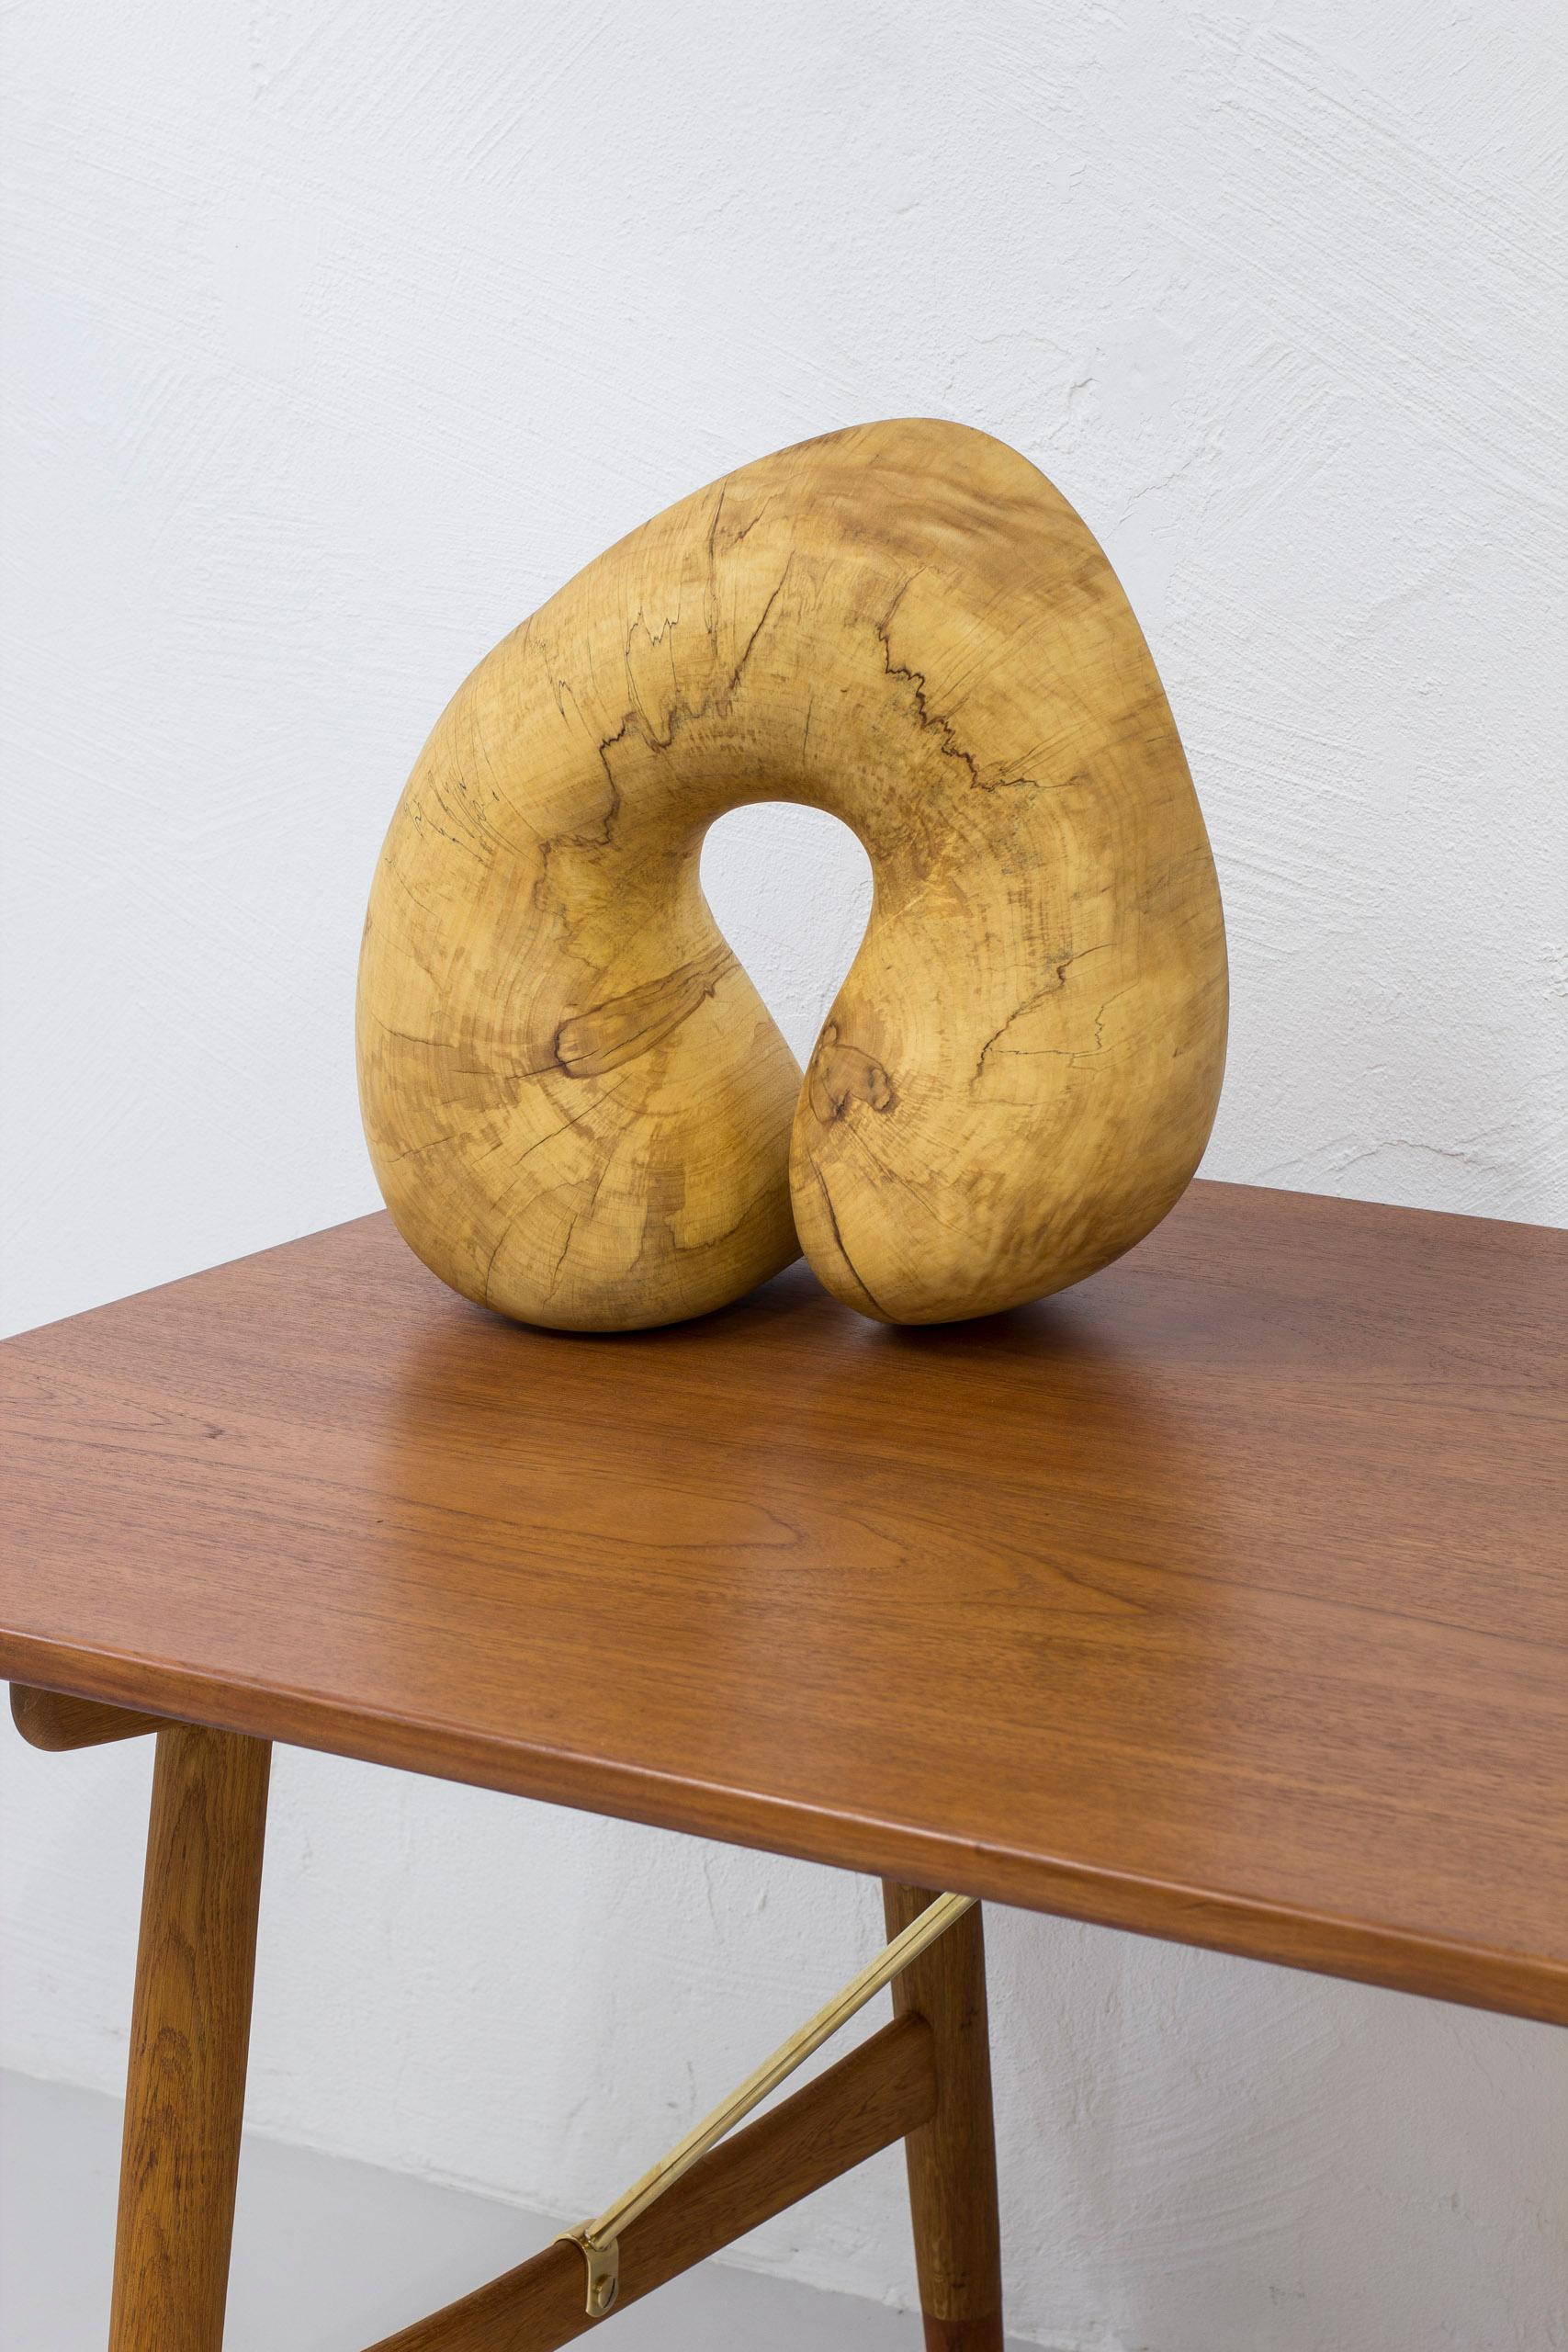 Grande sculpture organique en bois de forme libre réalisée à la main au Danemark dans les années 1950-60. Fabriqué par un sculpteur danois à partir d'une pièce d'érable massif. Lourd et très expressif. Une pièce unique. Très bon état avec peu de